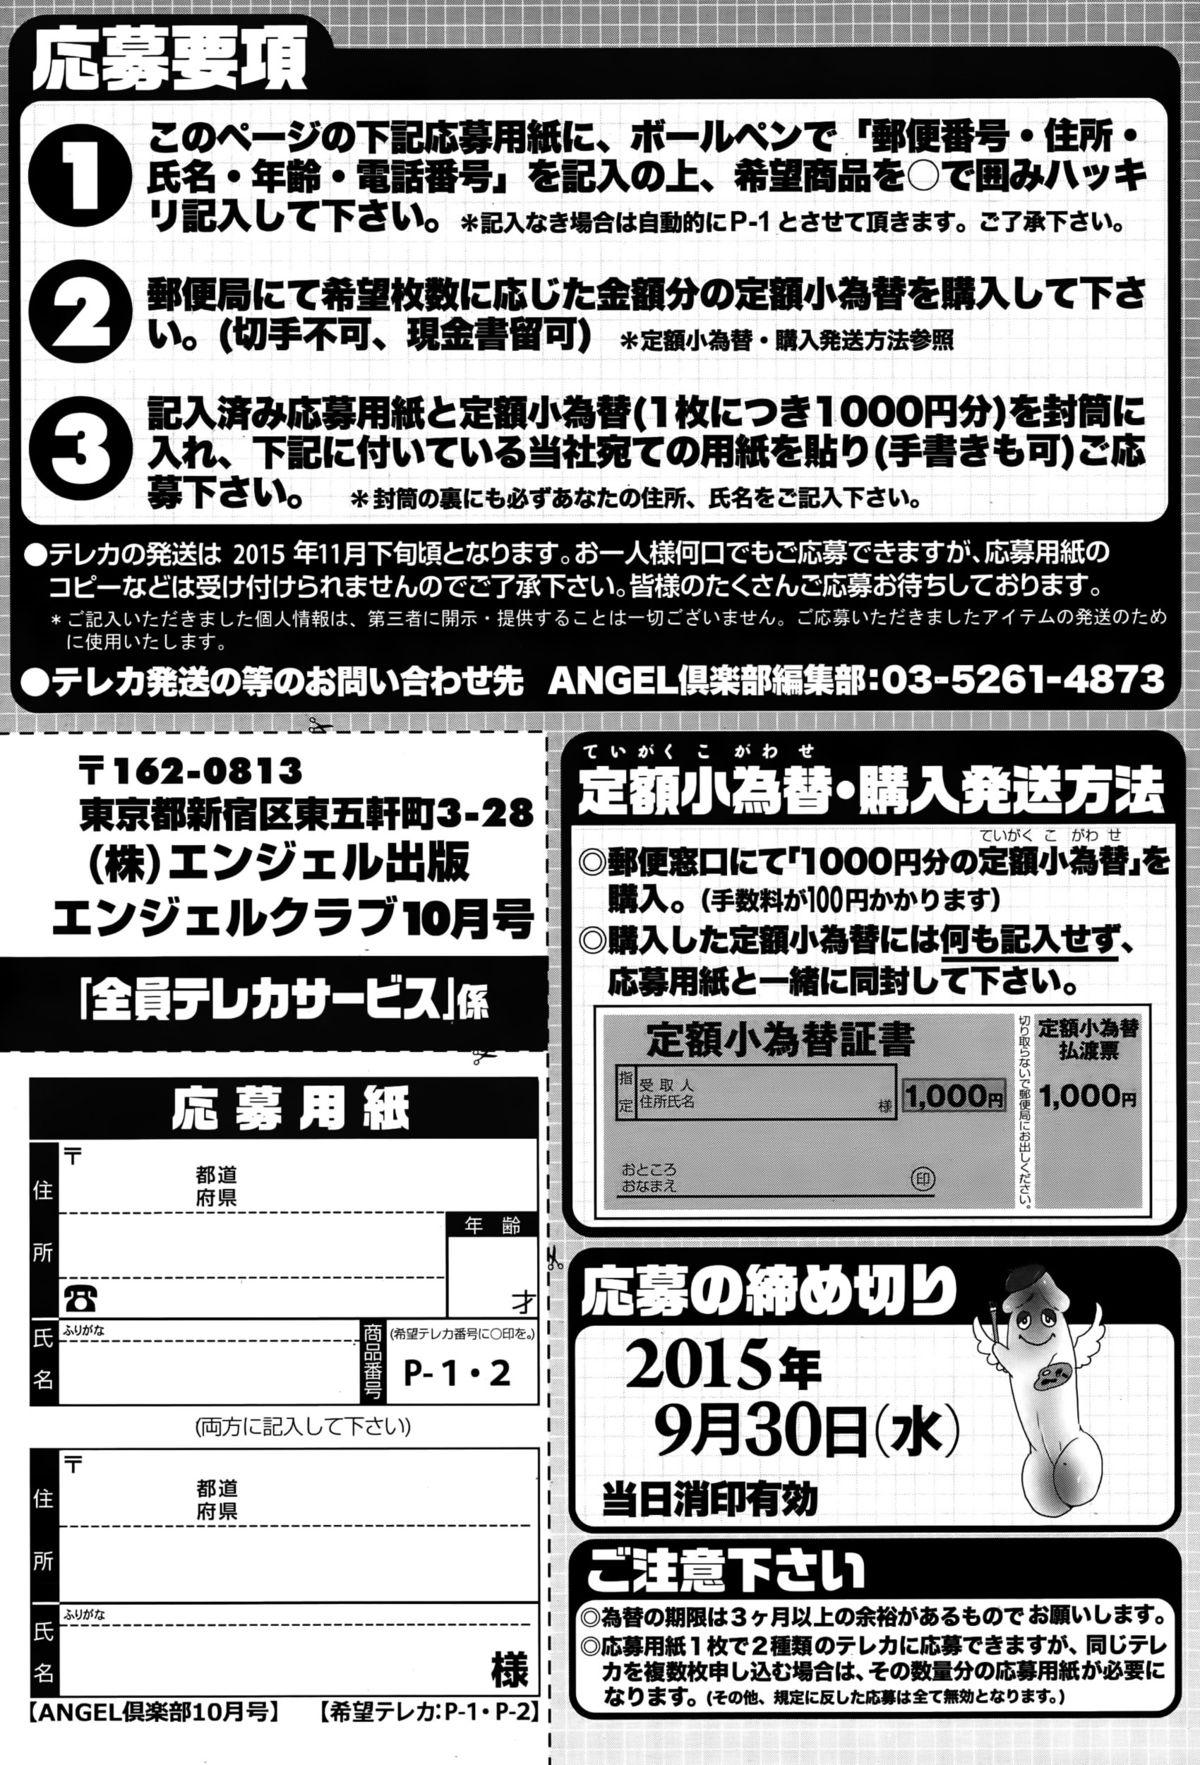 ANGEL Club 2015-10 205